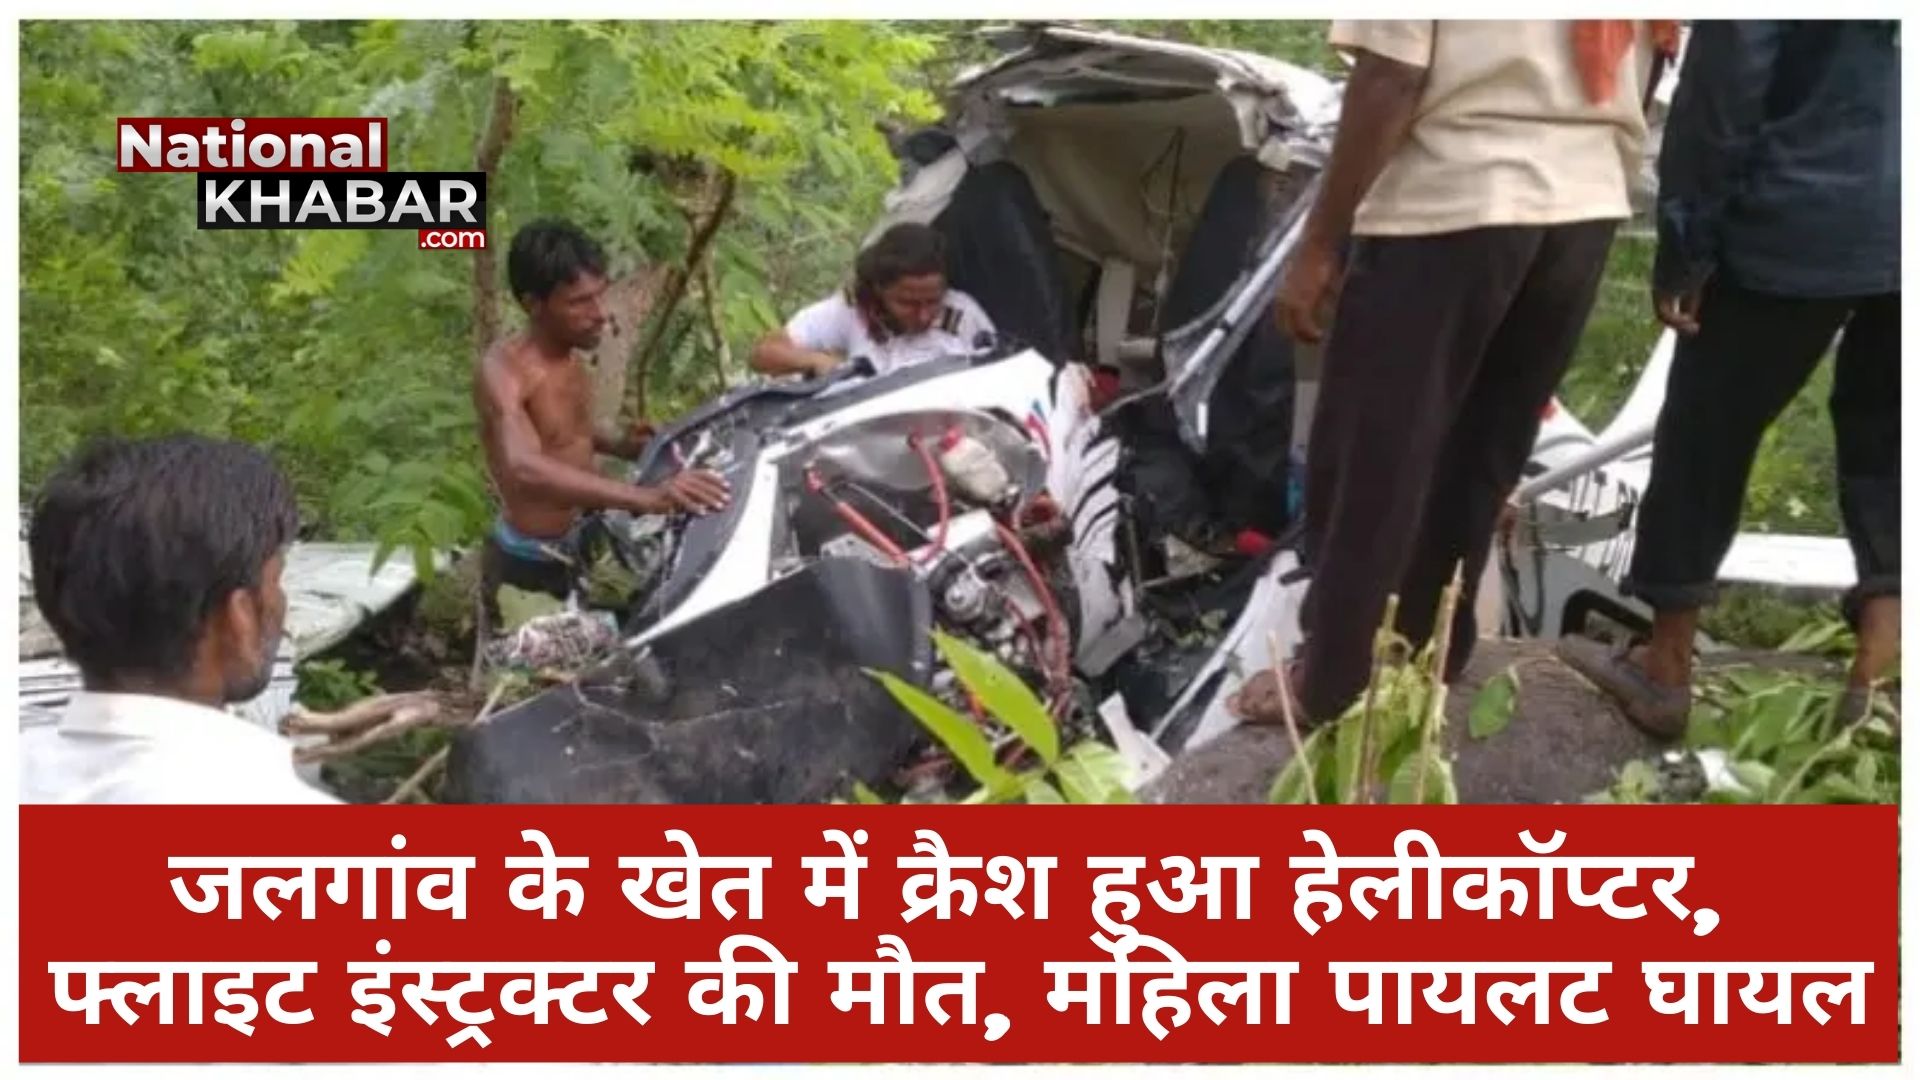 Maharashtra Helicopter Crash: हेलीकॉप्टर क्रैश में फ्लाइट इंस्ट्रक्टर की मौत की मौत, महिला पायलट की हालत गंभीर